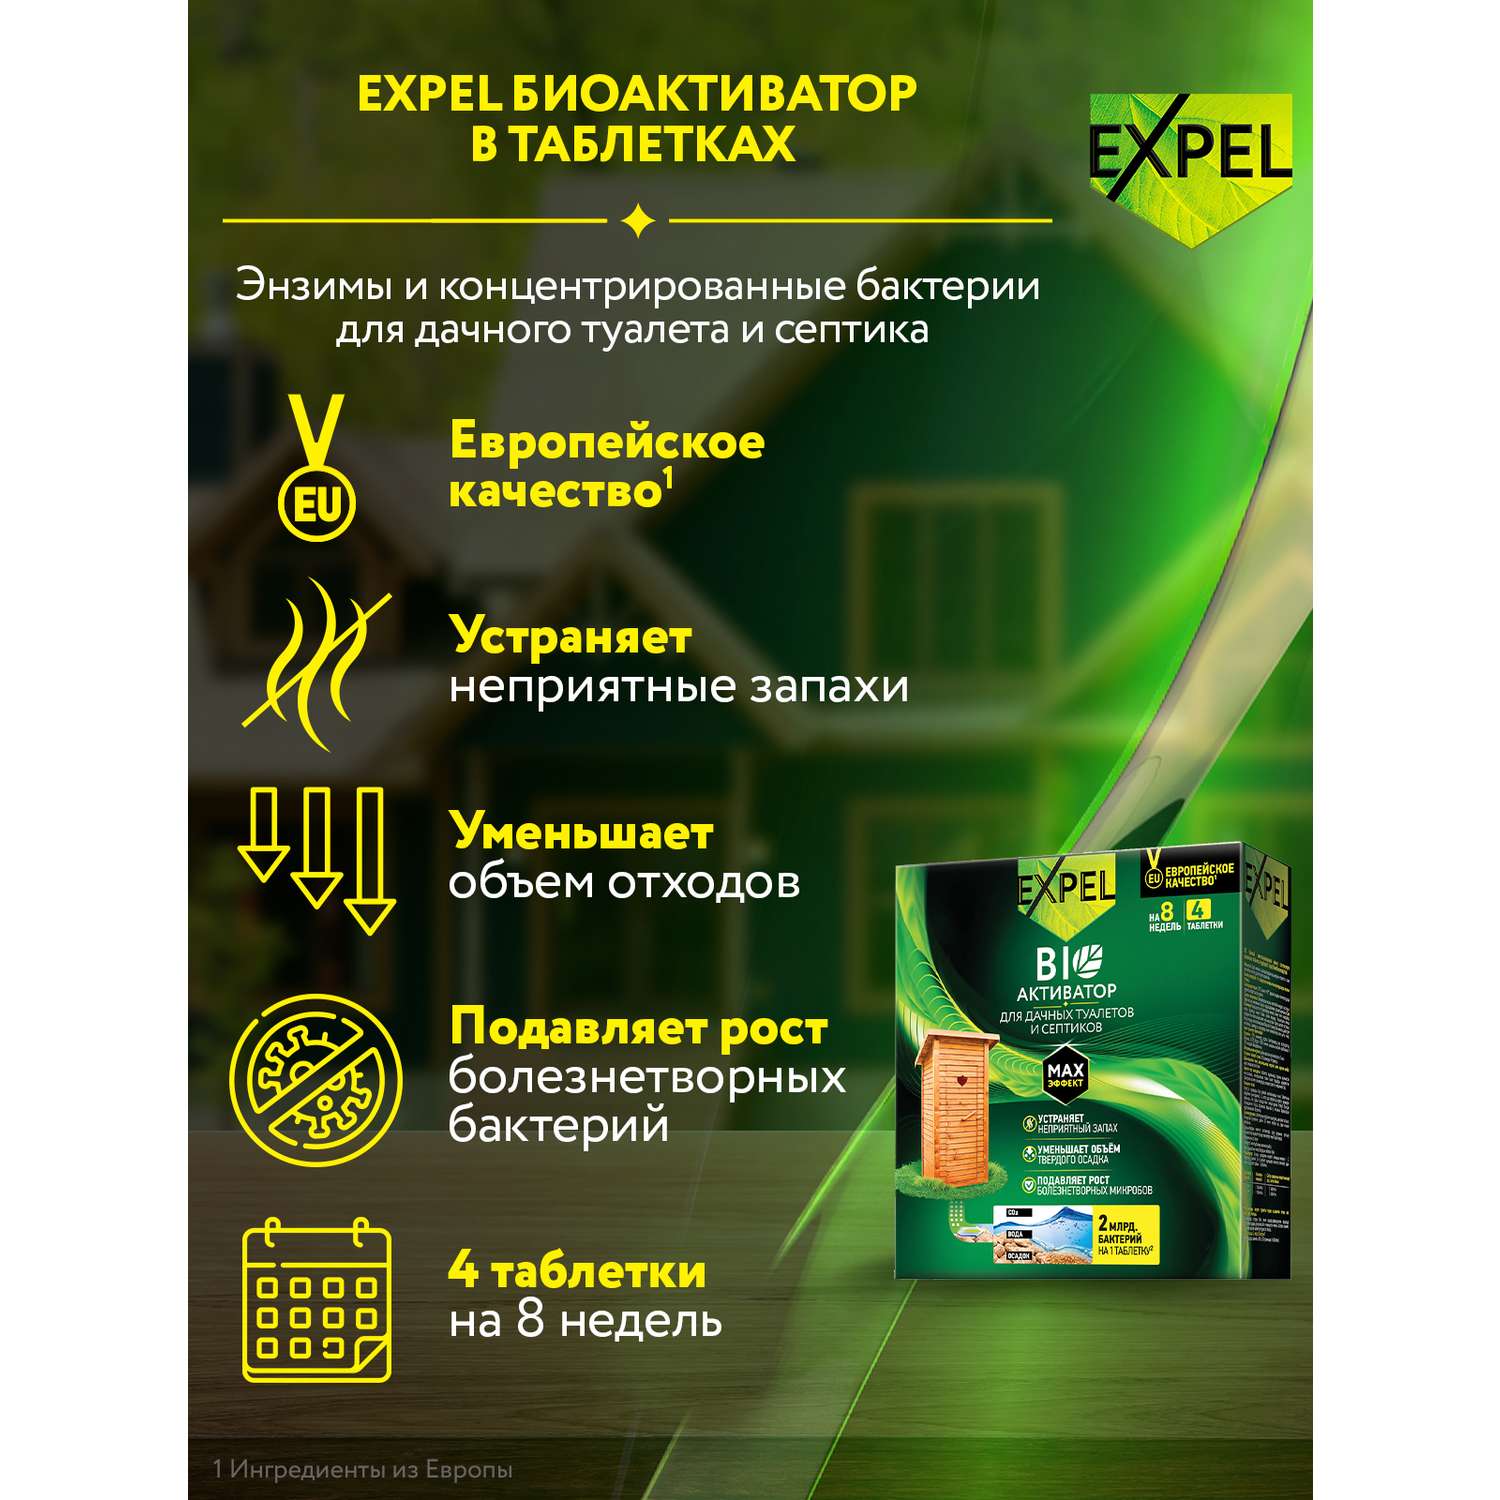 Биоактиватор Expel для дачных туалетов и септиков в таблетках 4x20 г - фото 2